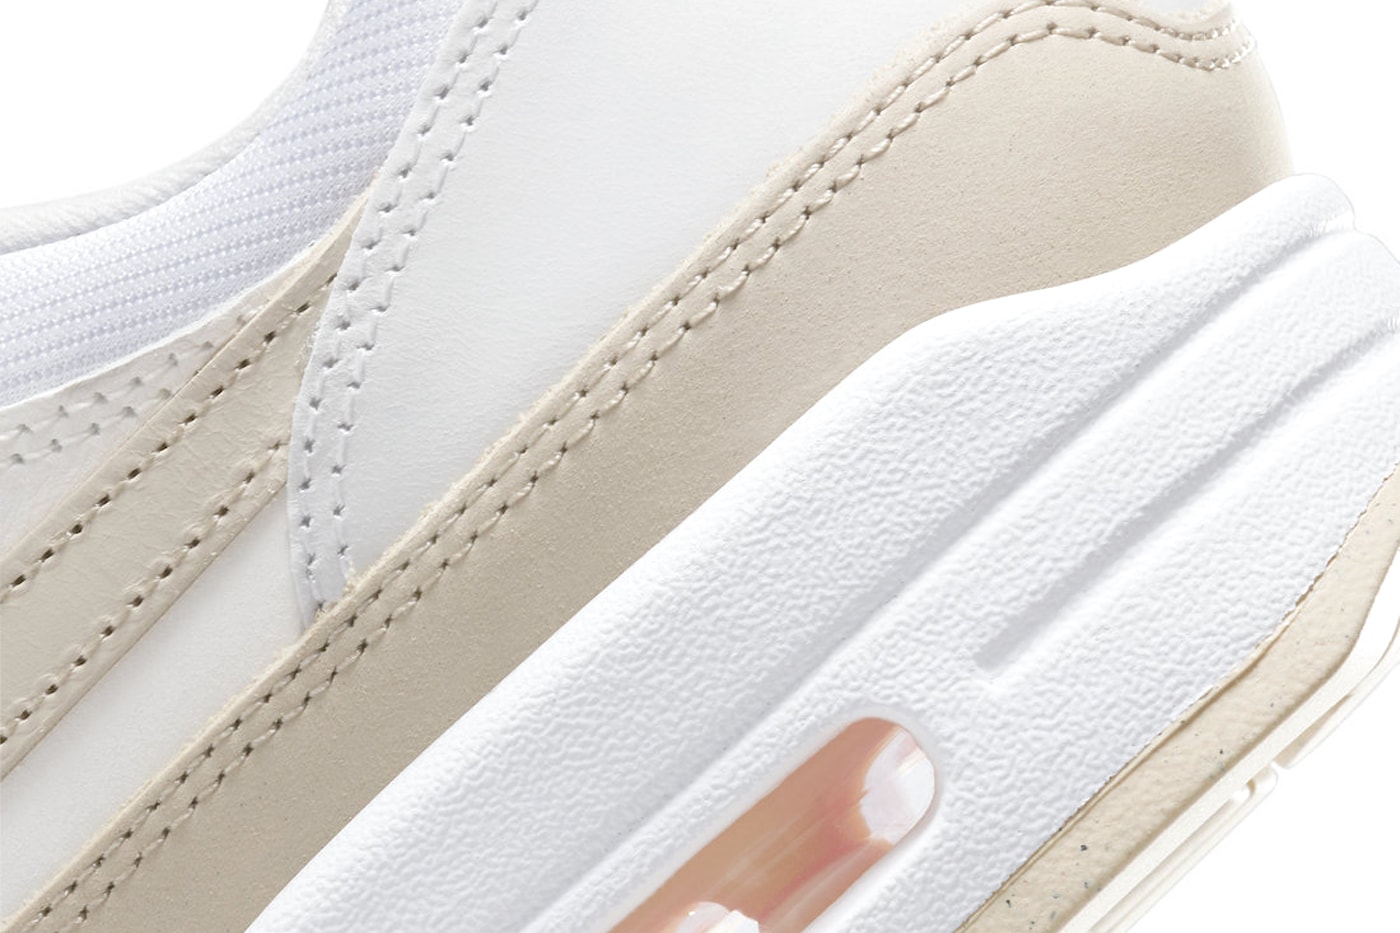 Official Look at the Nike Air Max 1 Premium "Sanddrift" FB5060-100 Summit White/Sanddrift-Phantom white sneaker classic staple swoosh spring summer